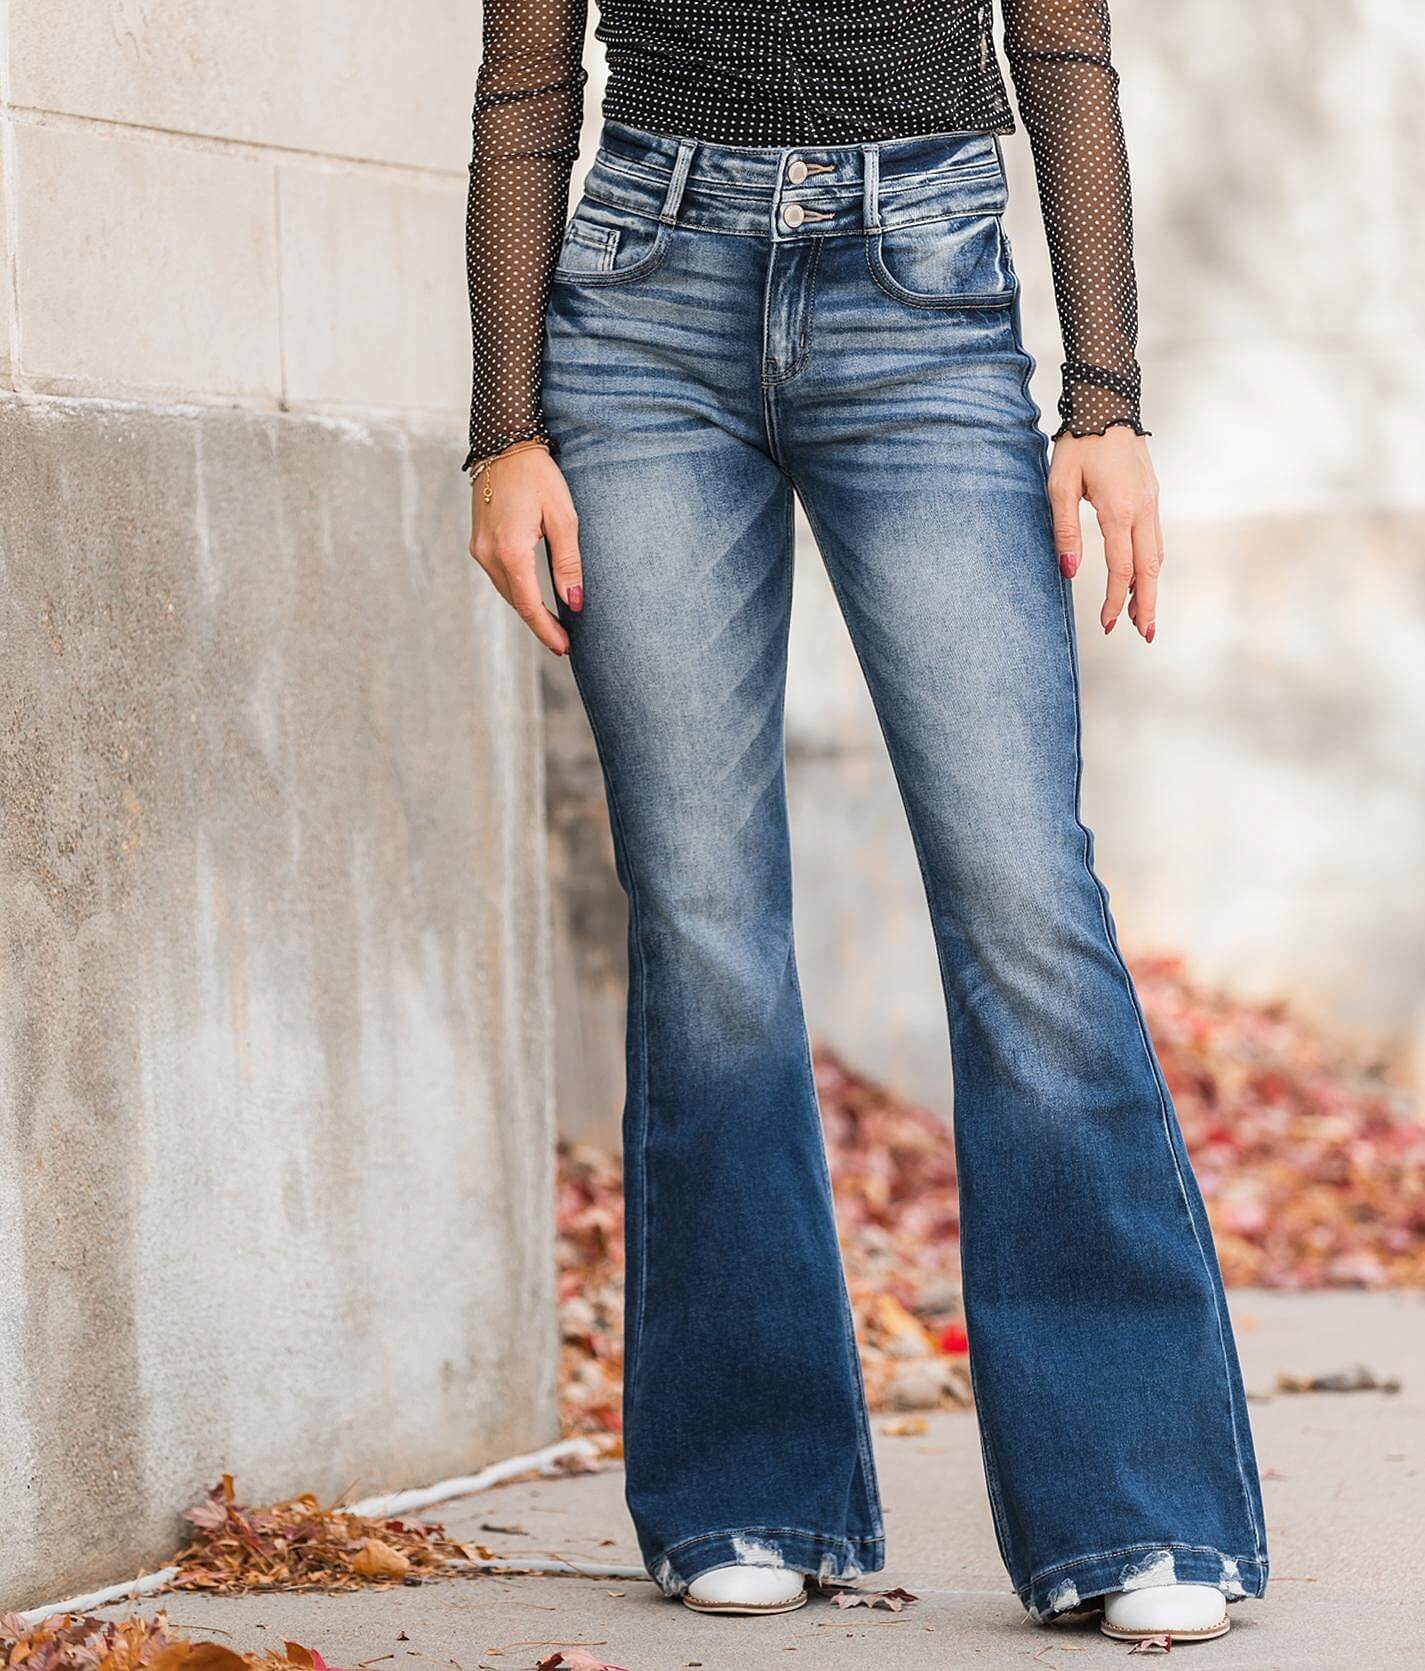 Как носить широкие джинсы женские